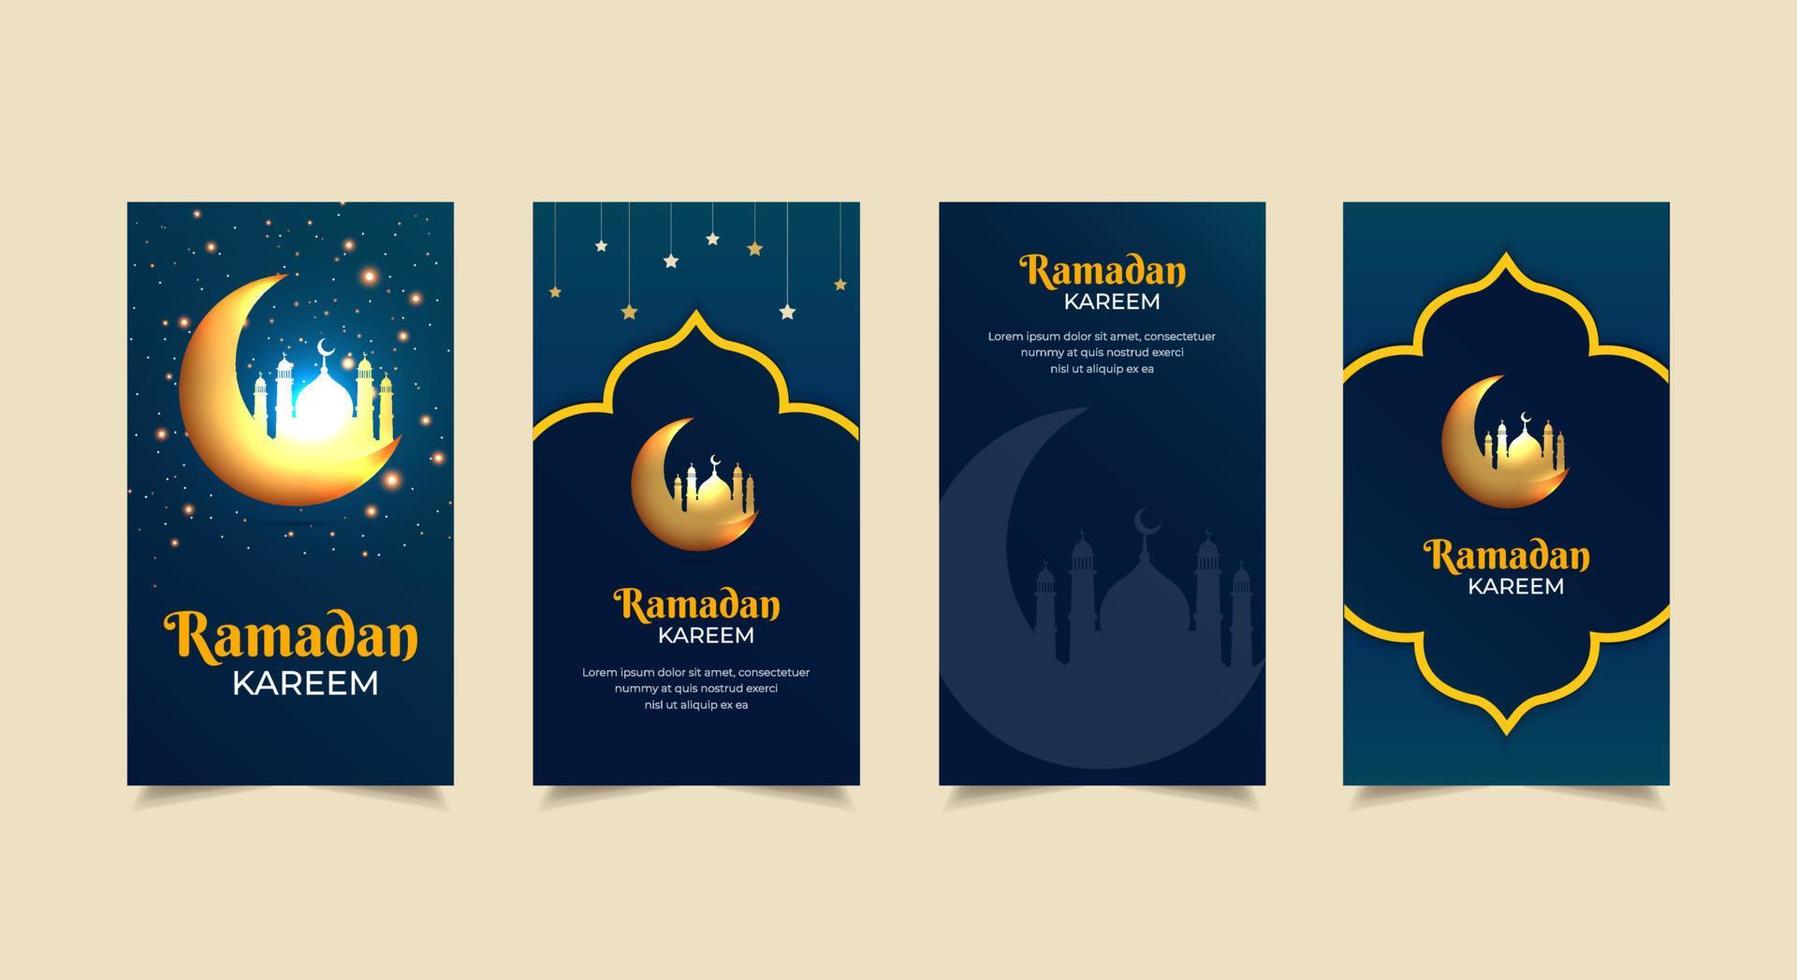 glücklicher ramadan kareem hintergrund mit goldenem halbmond und moscheensilhouette. Ramadhan Kareem Design-Geschichten-Sammlung. Ramadhan Kareem-Vorlagengeschichten, die für Werbung, Marketing usw. geeignet sind. vektor